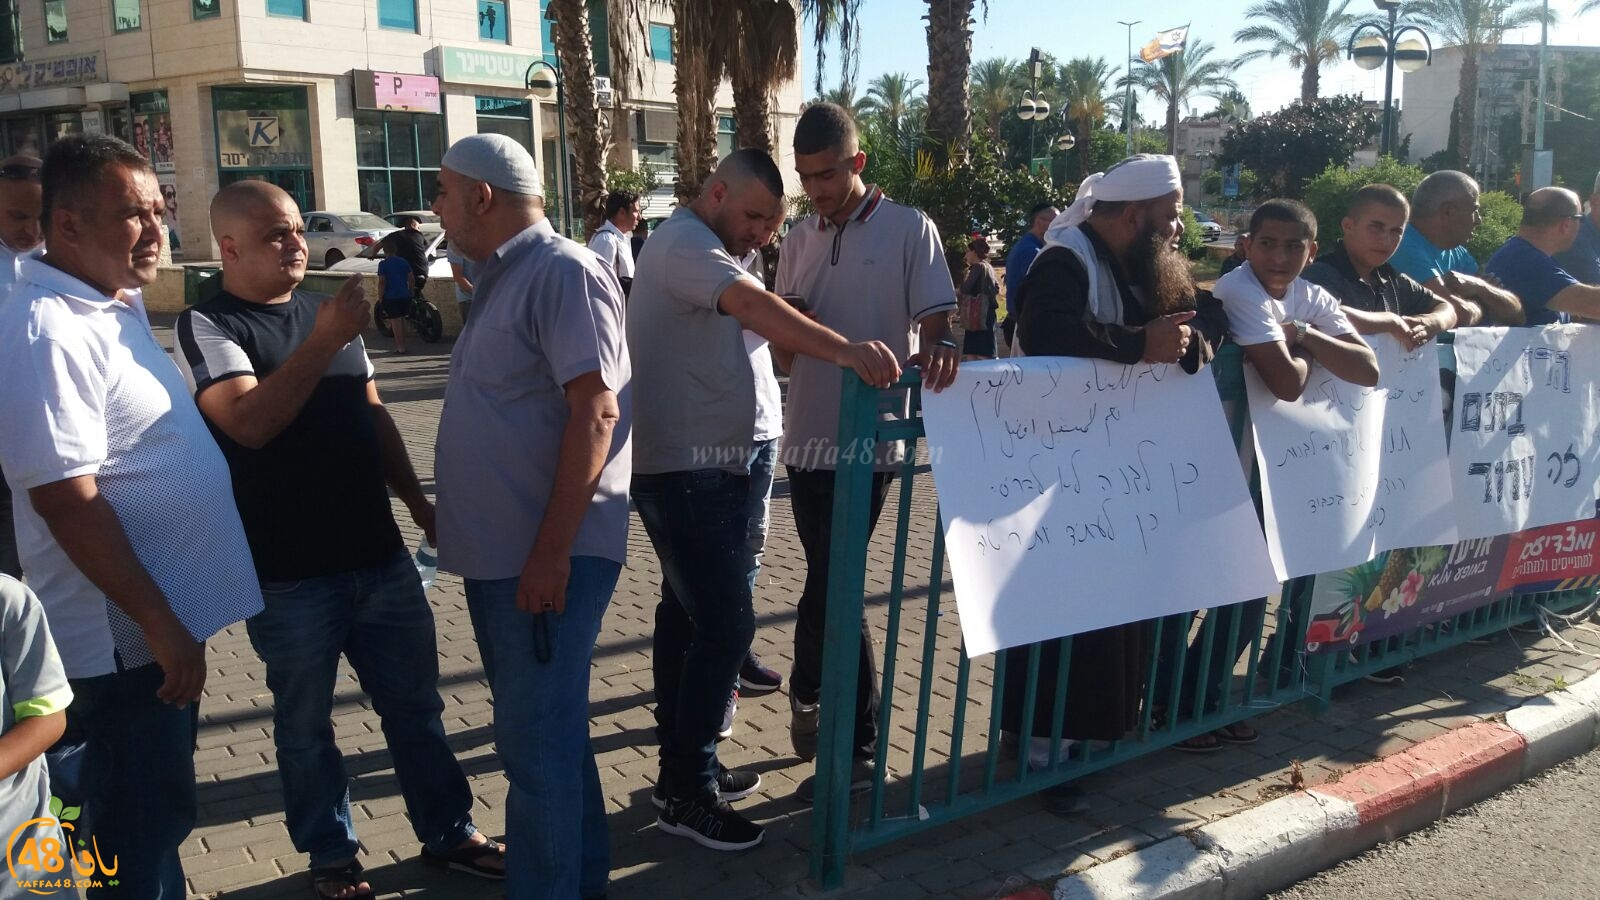 اللد : وقفة احتجاجية بالقرب من المحكة المركزية احتجاجاً على سياسة هدم البيوت العربية